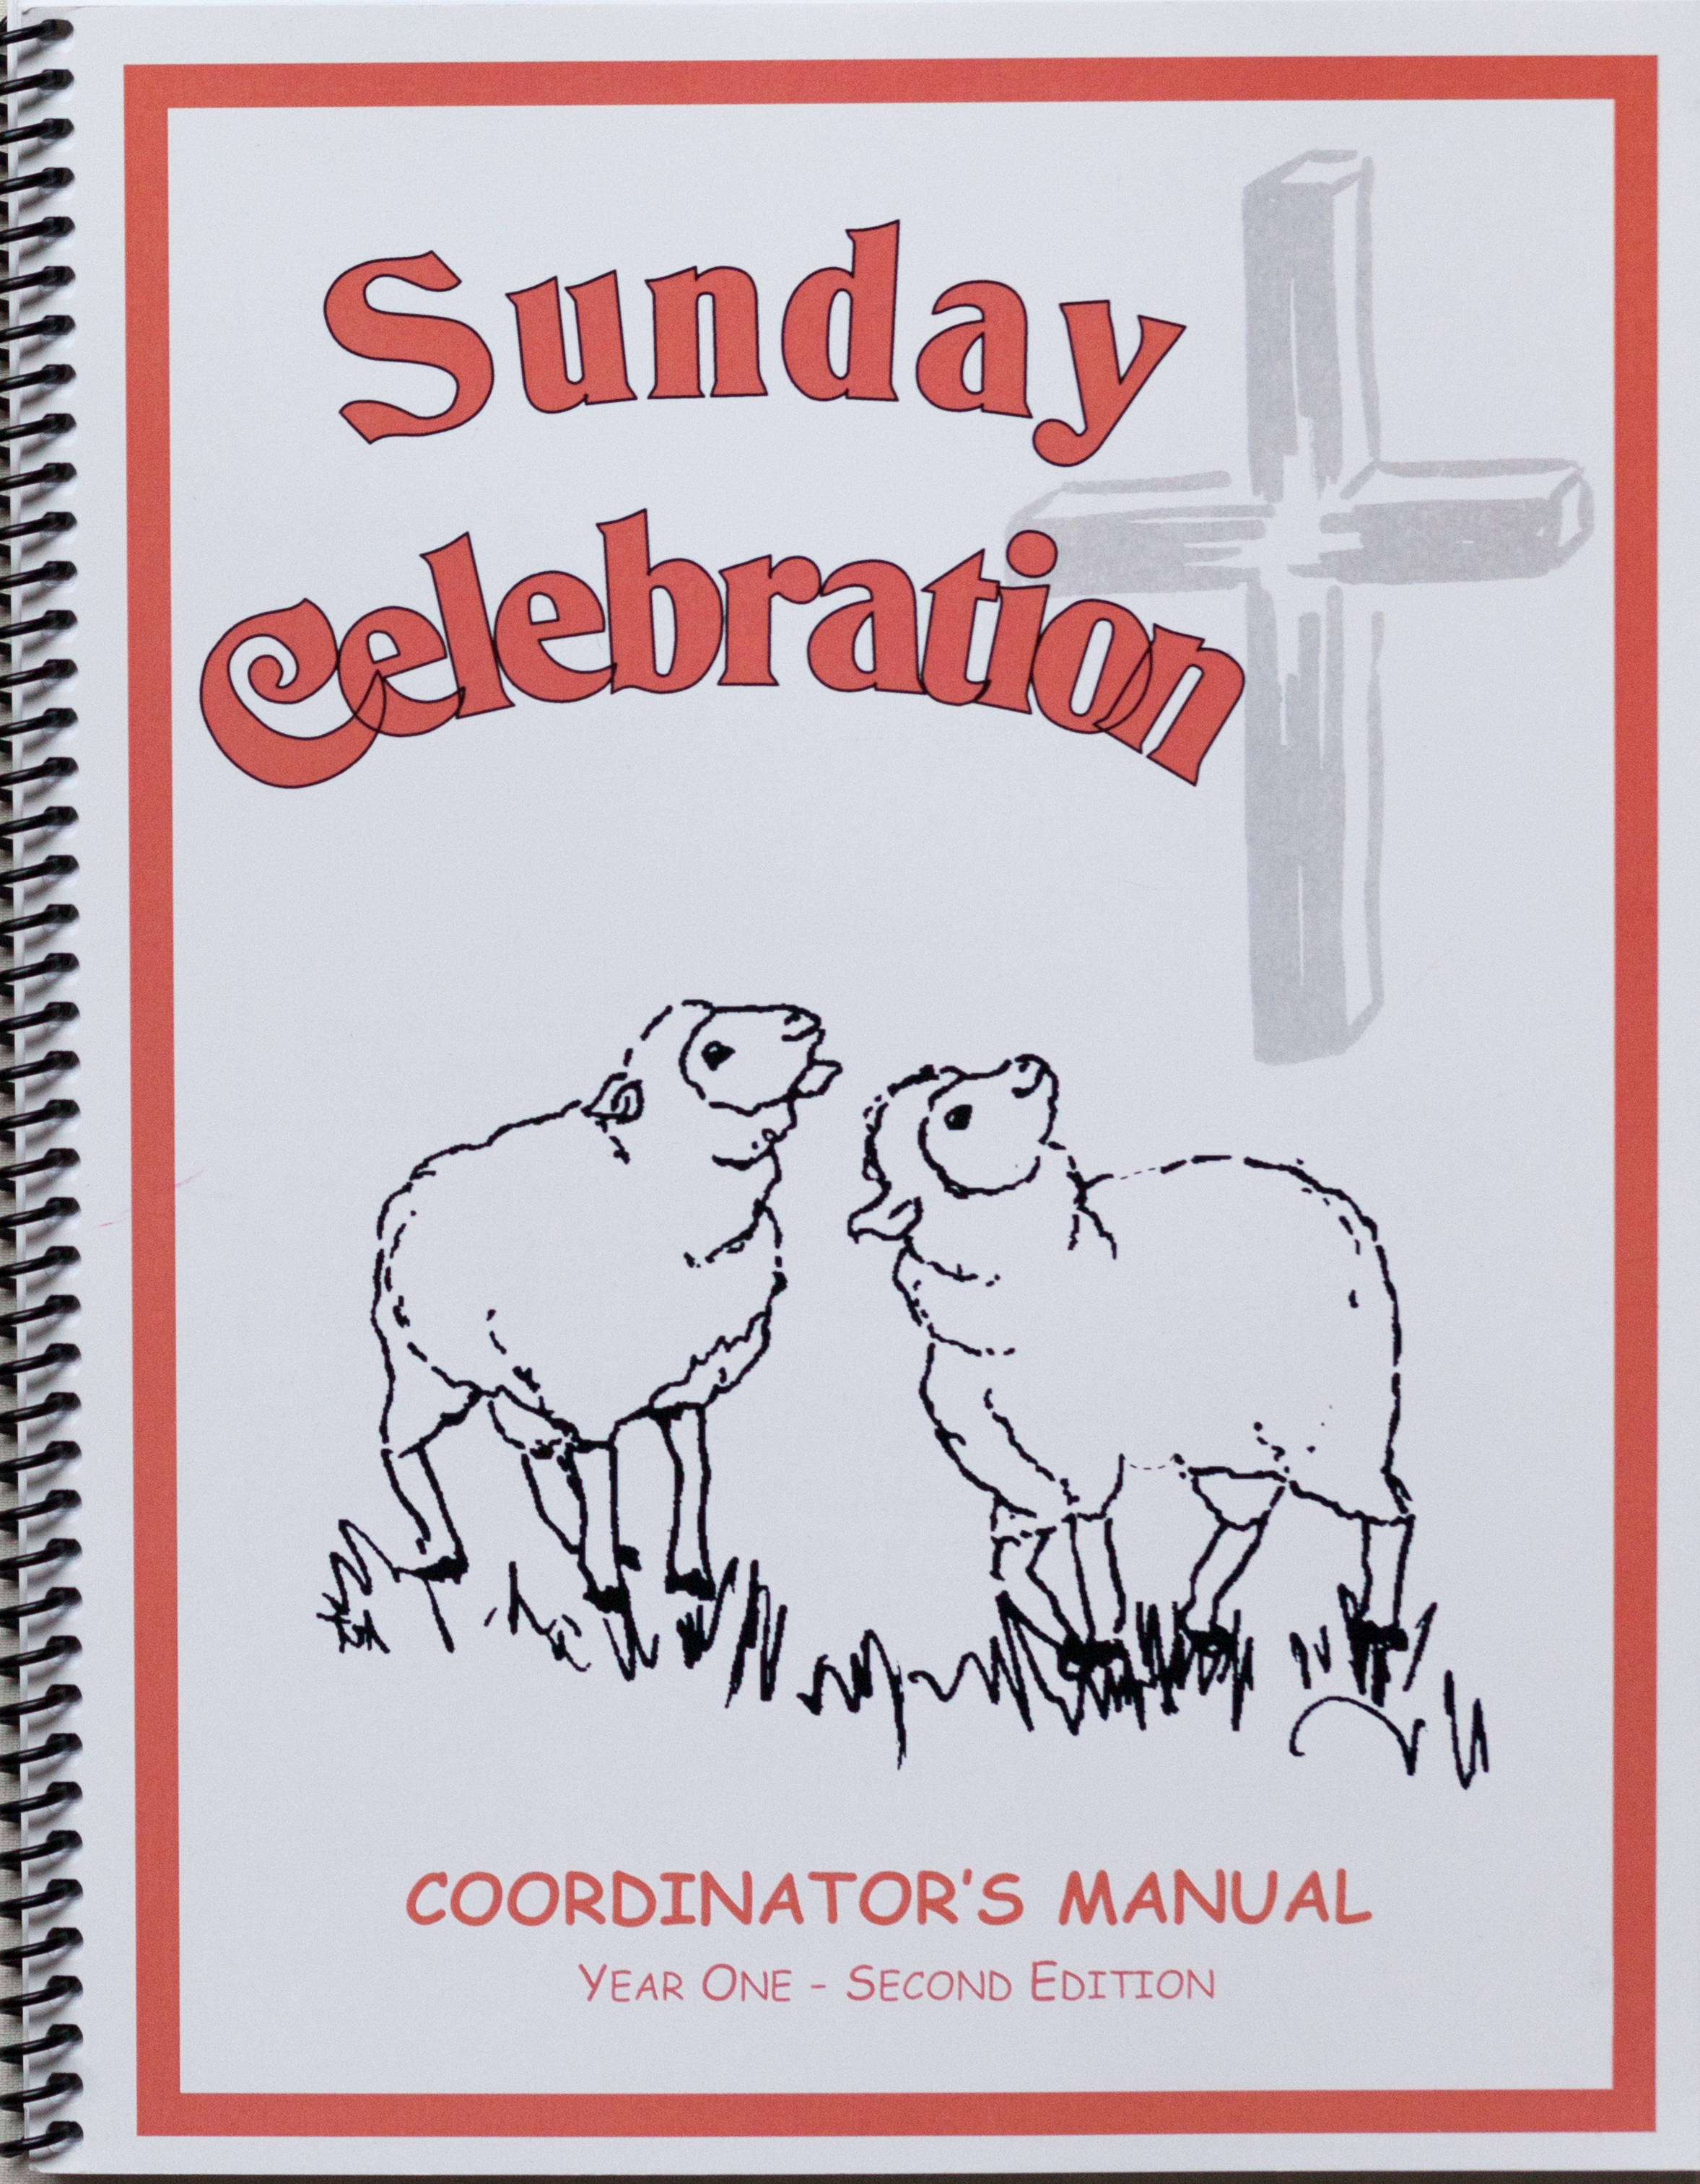 Sunday Celebration Coordinators Manual (preschool classroom lessons).png